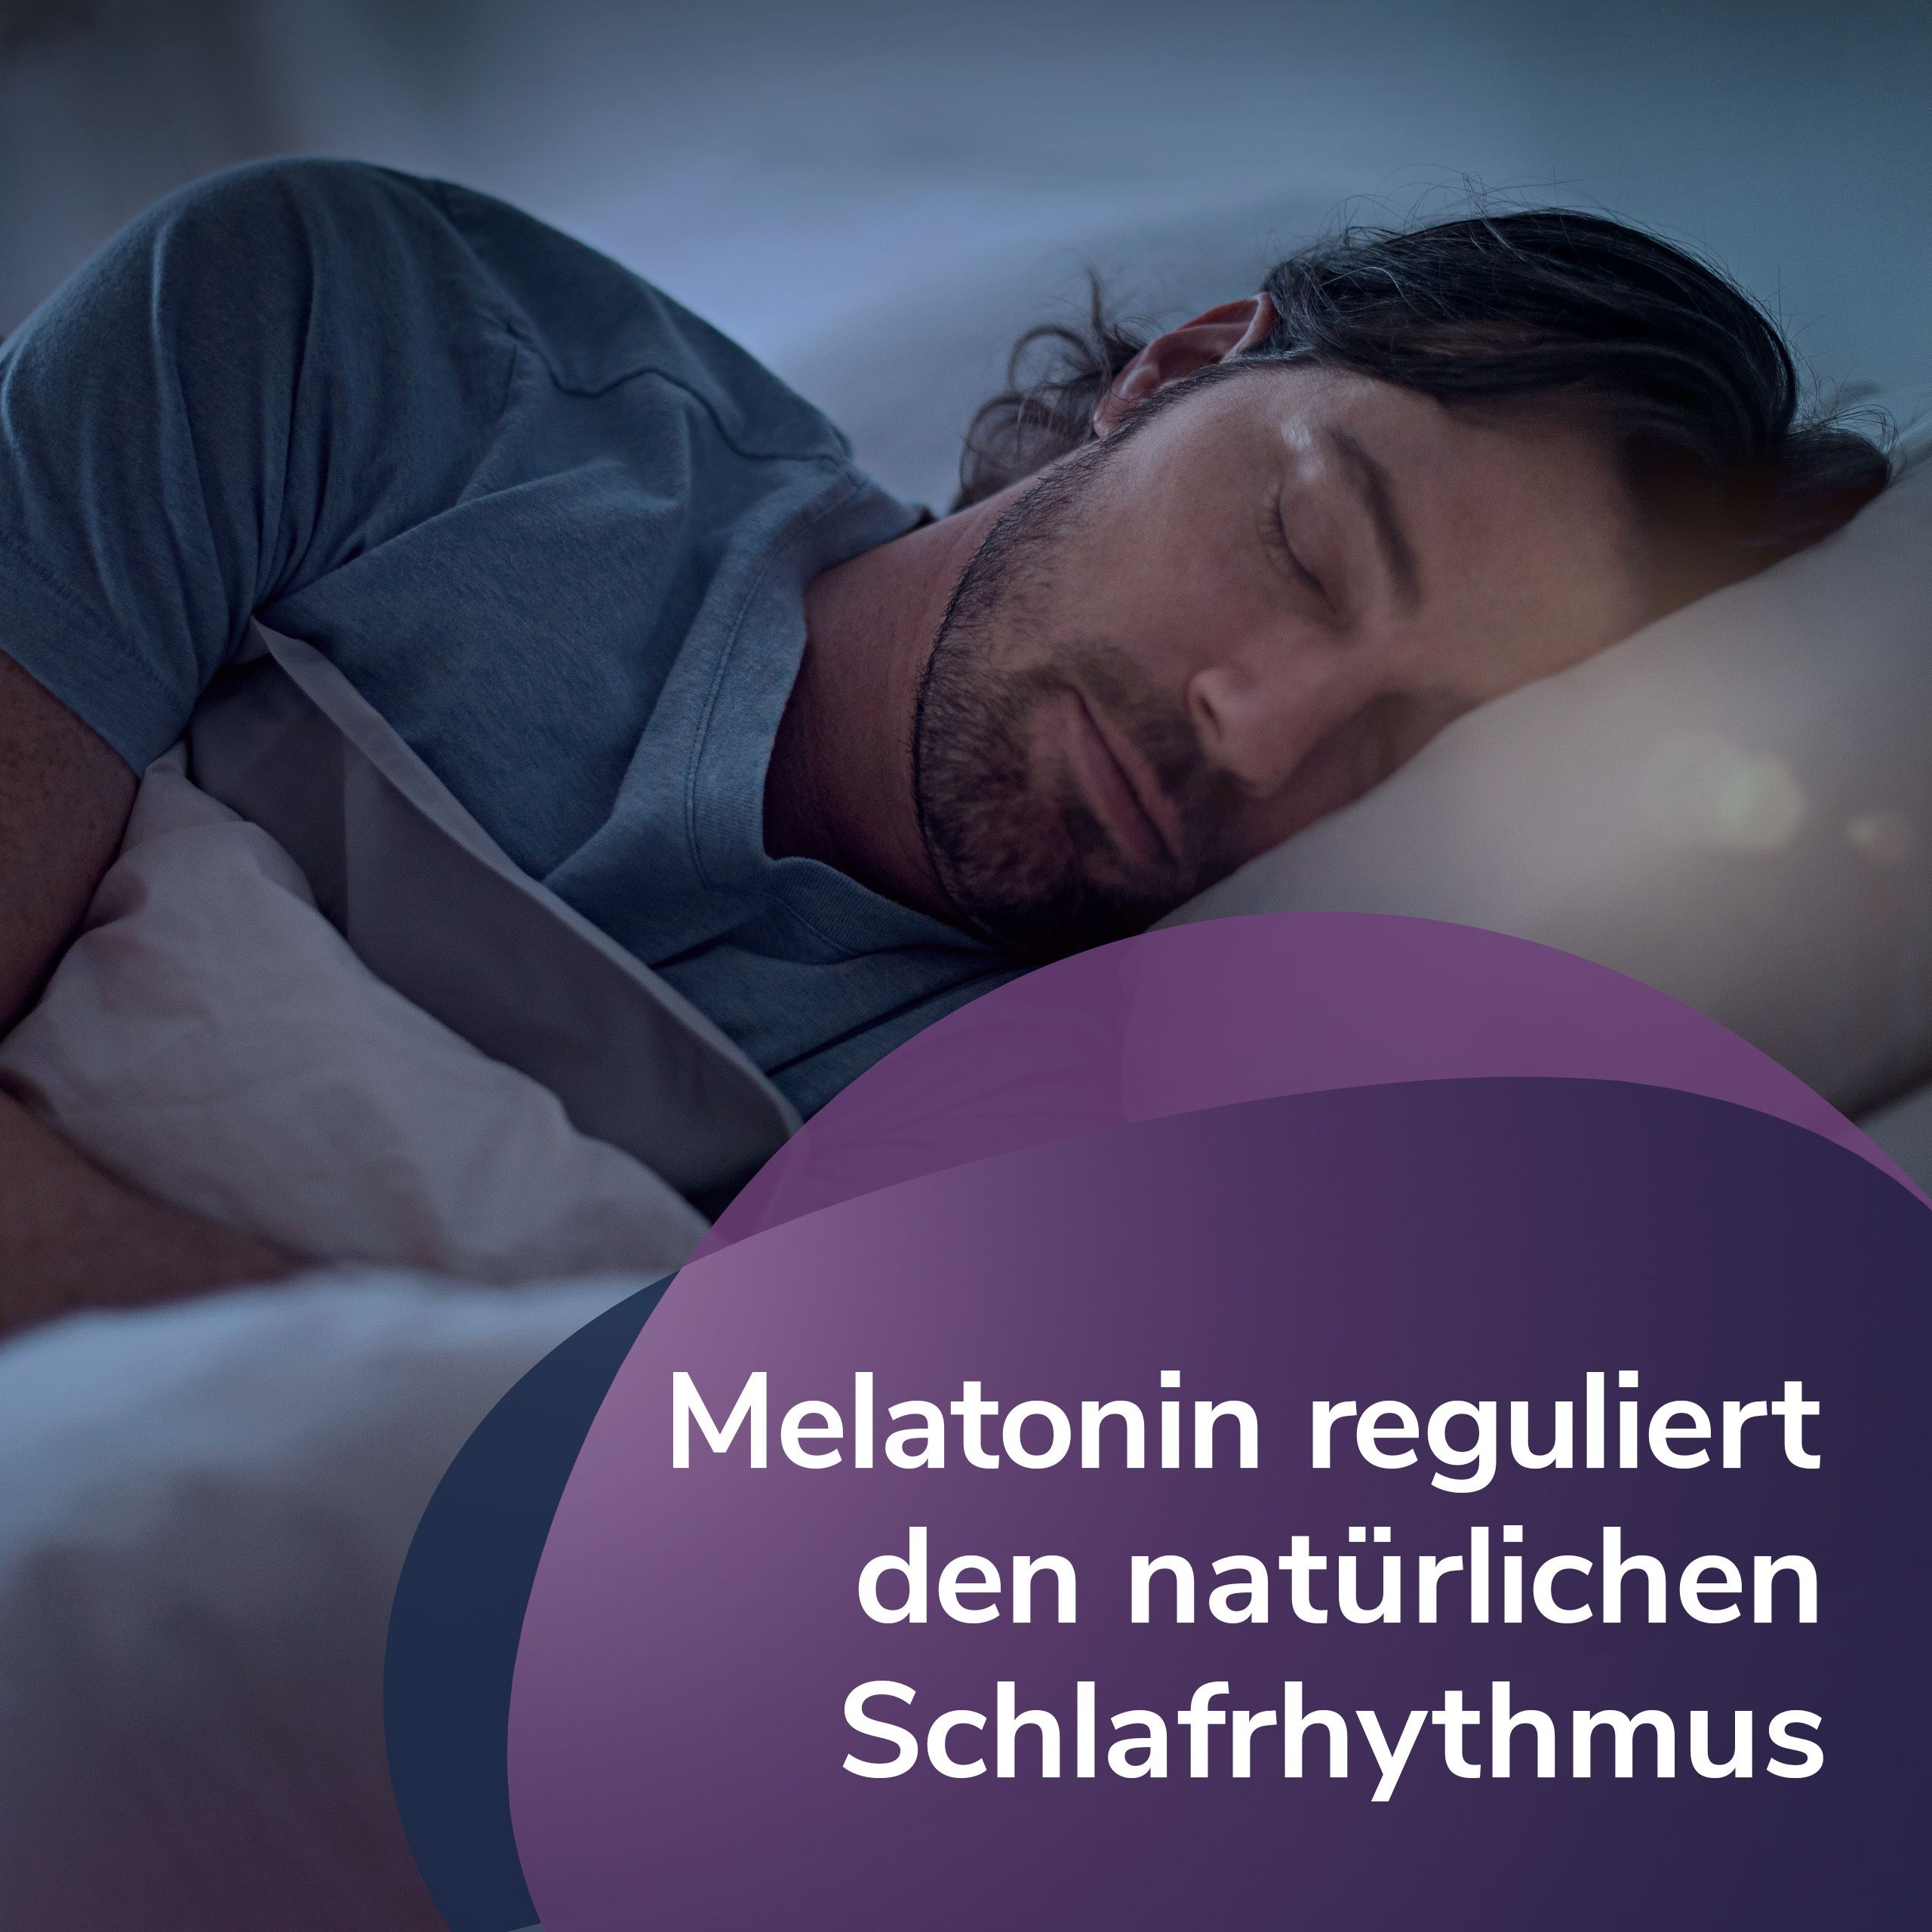 Lunalaif Guter Schlaf Kombi Depot mit 1,9 mg Melatonin